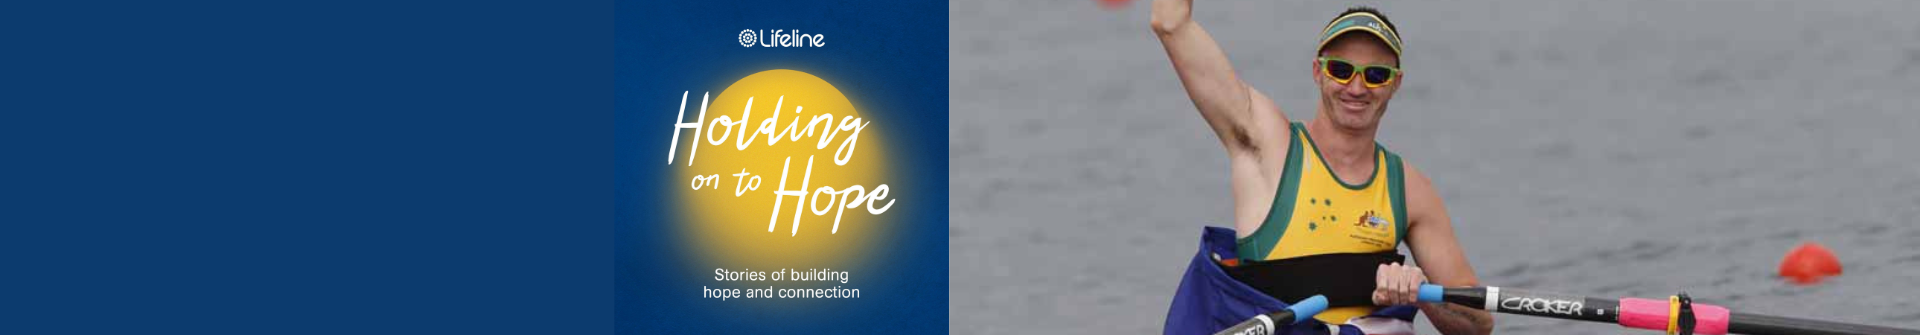 10 Holding onto hope podcast